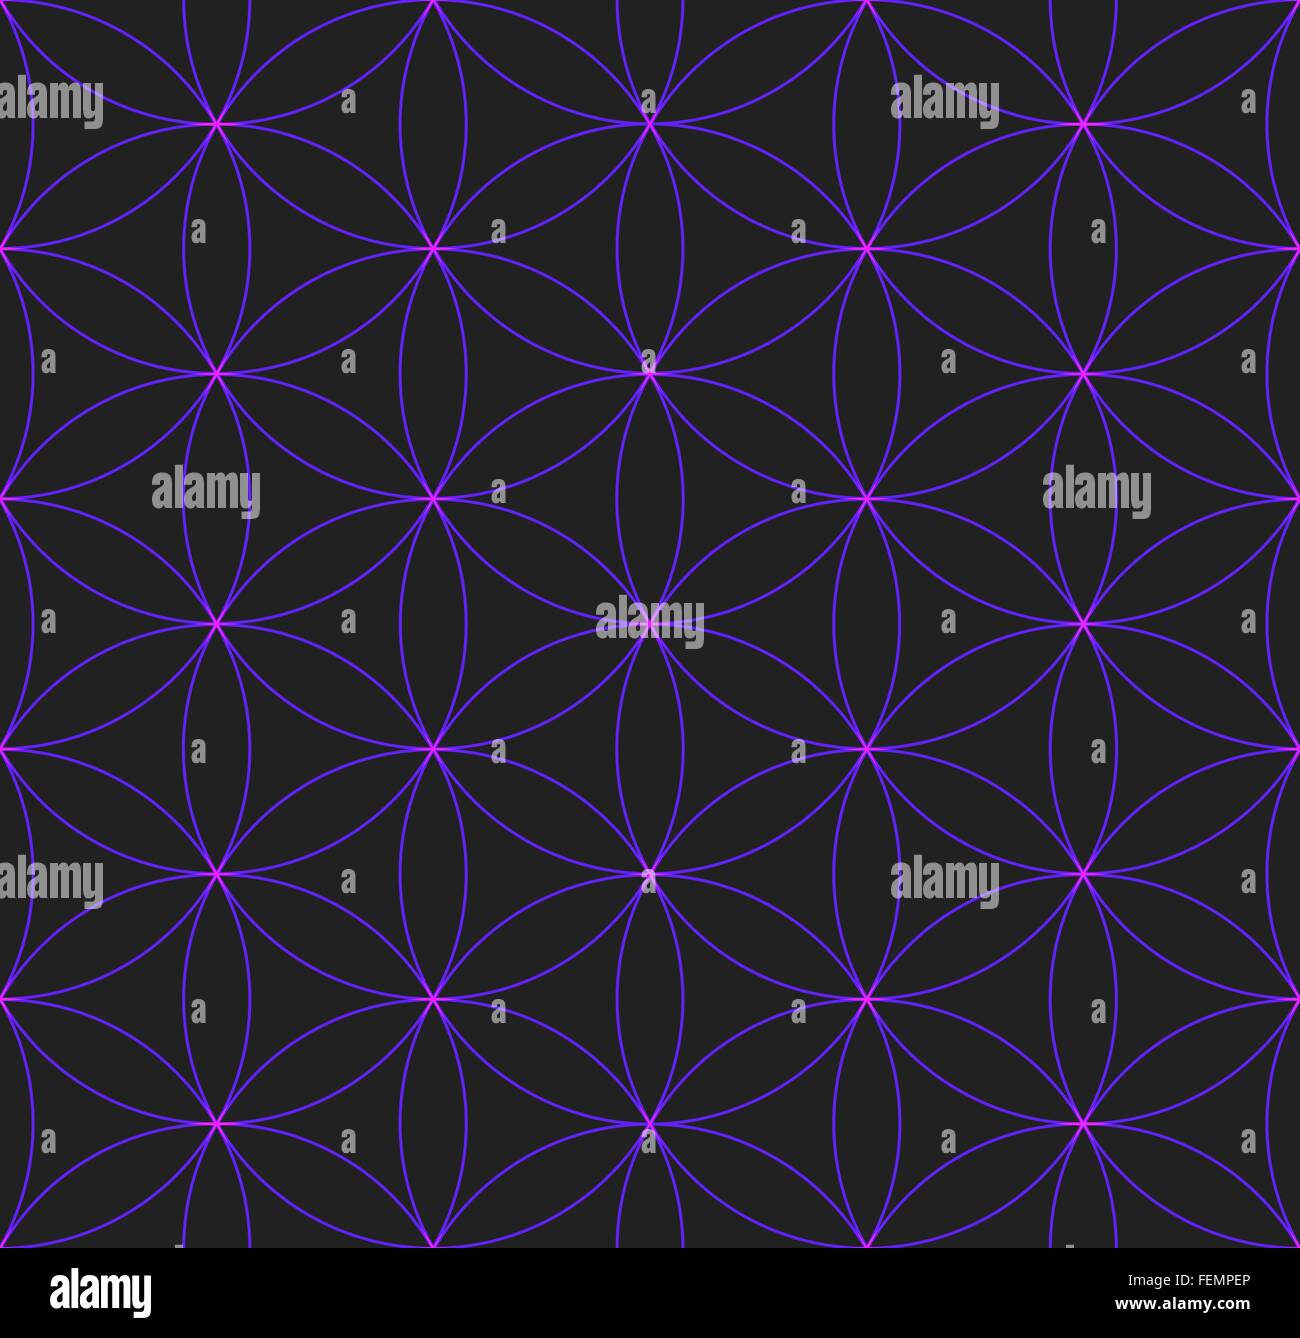 Vektor-violett glänzende Farbe Hinduismus Heilige Geometrie Blume des Lebens Musterdesign dunklen Hintergrund Stock Vektor